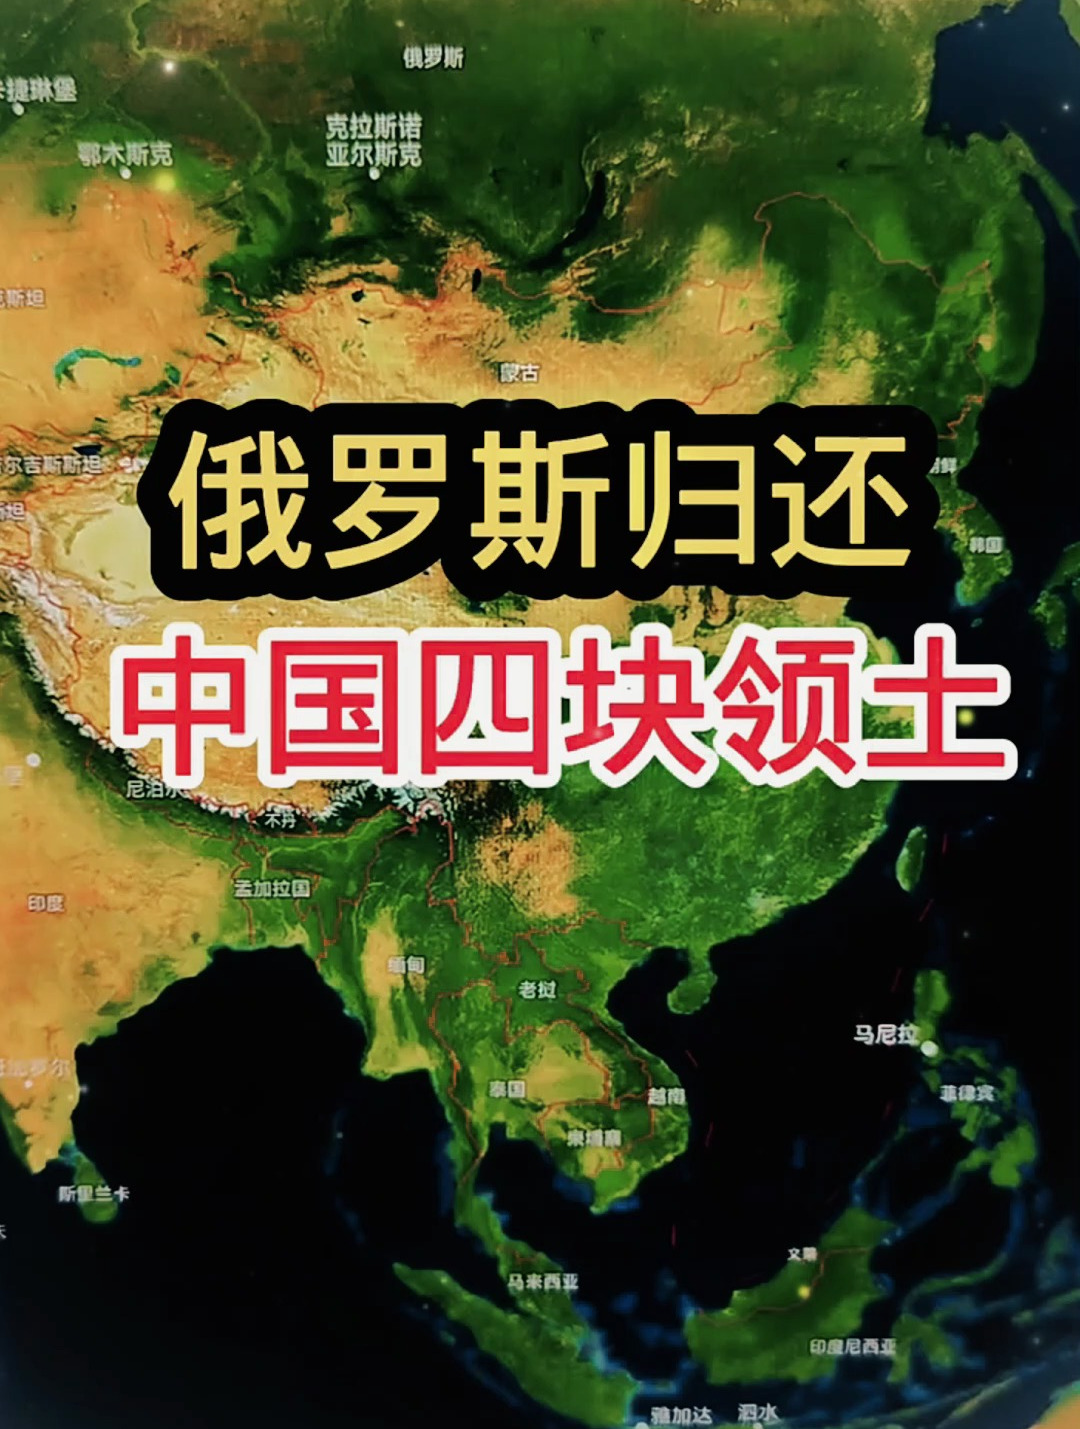 俄罗斯归还的中国四块土地是哪几个